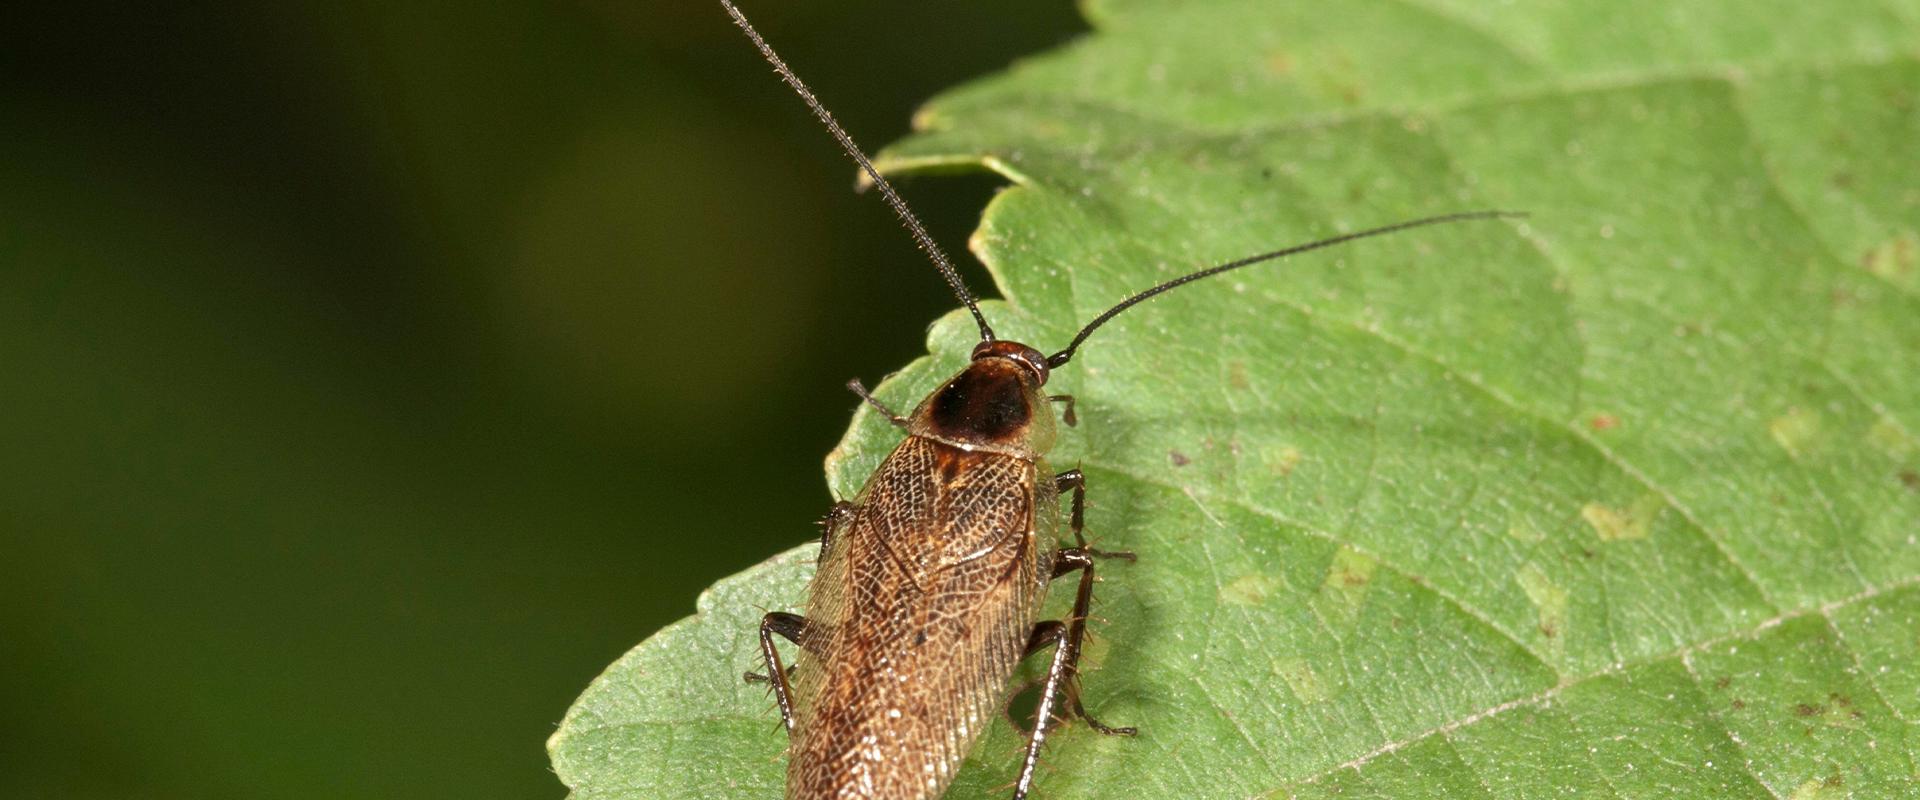 a german cockroach on a leaf